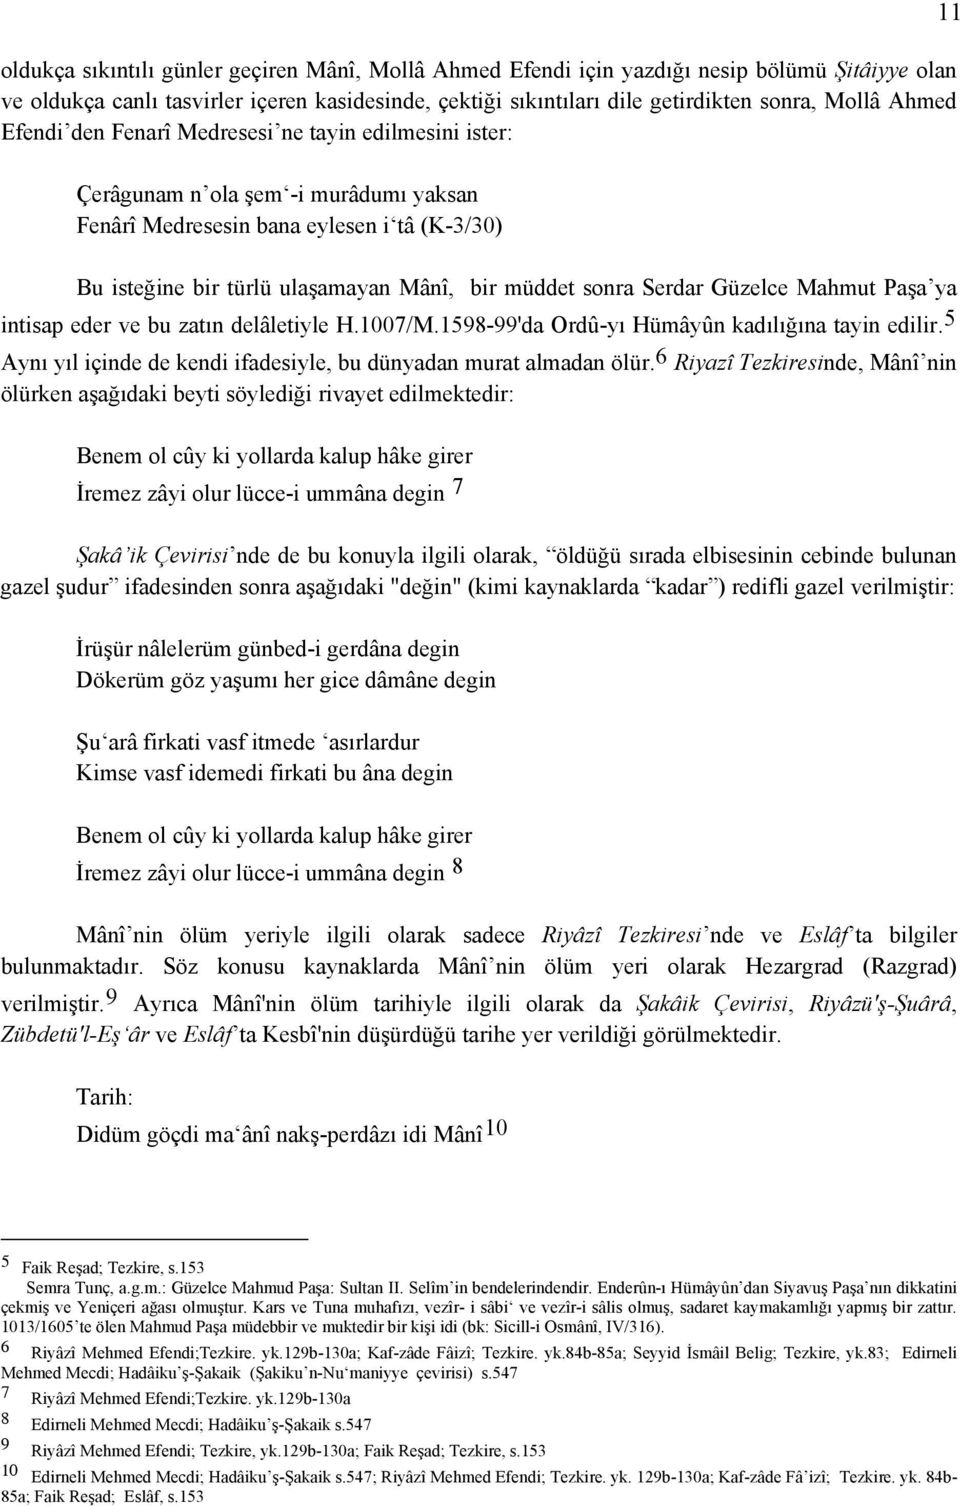 sonra Serdar Güzelce Mahmut Paşa ya intisap eder ve bu zatın delâletiyle H.1007/M.1598-99'da Ordû-yı Hümâyûn kadılığına tayin edilir.